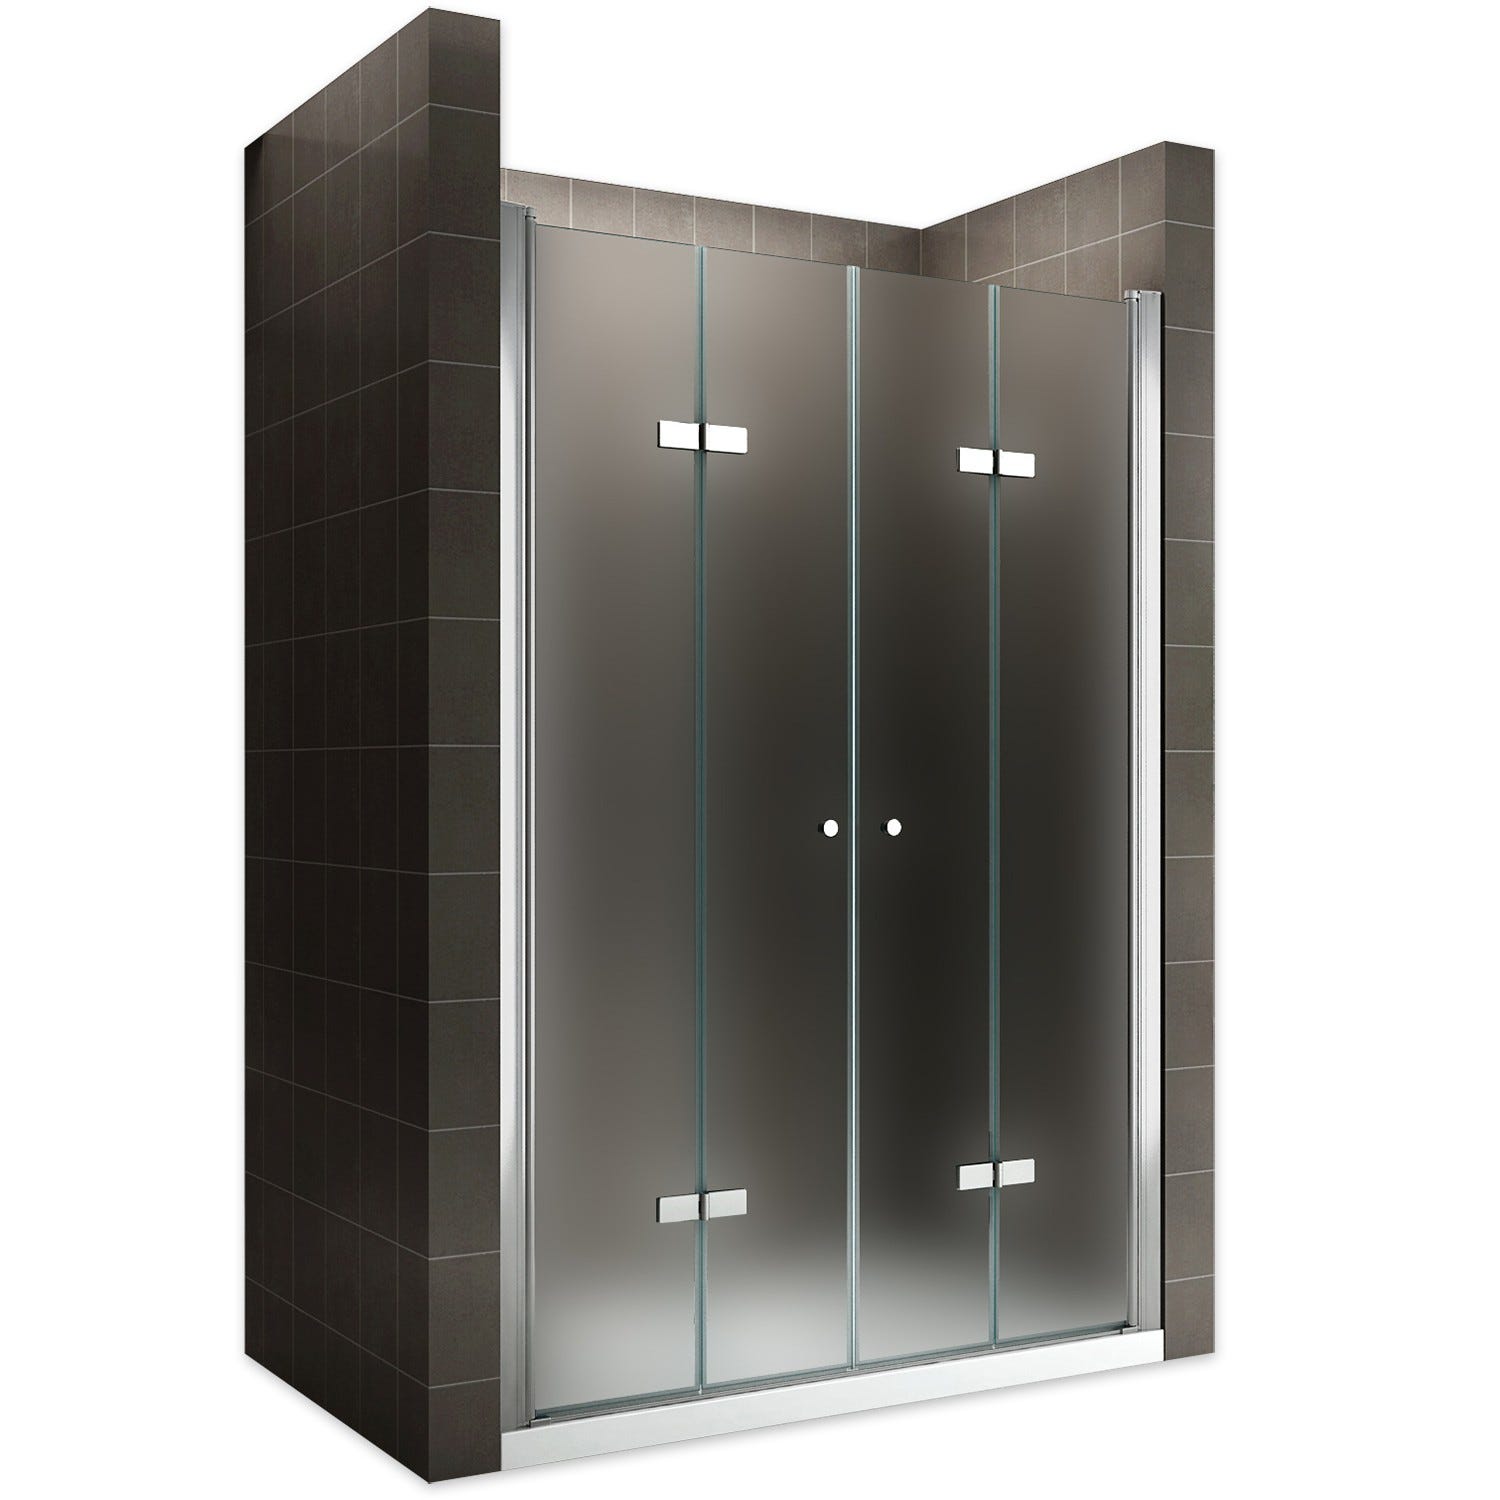 EMMY Porte de douche pliante pivotante H 185 cm largeur réglable 120 à 124 cm verre opaque 0